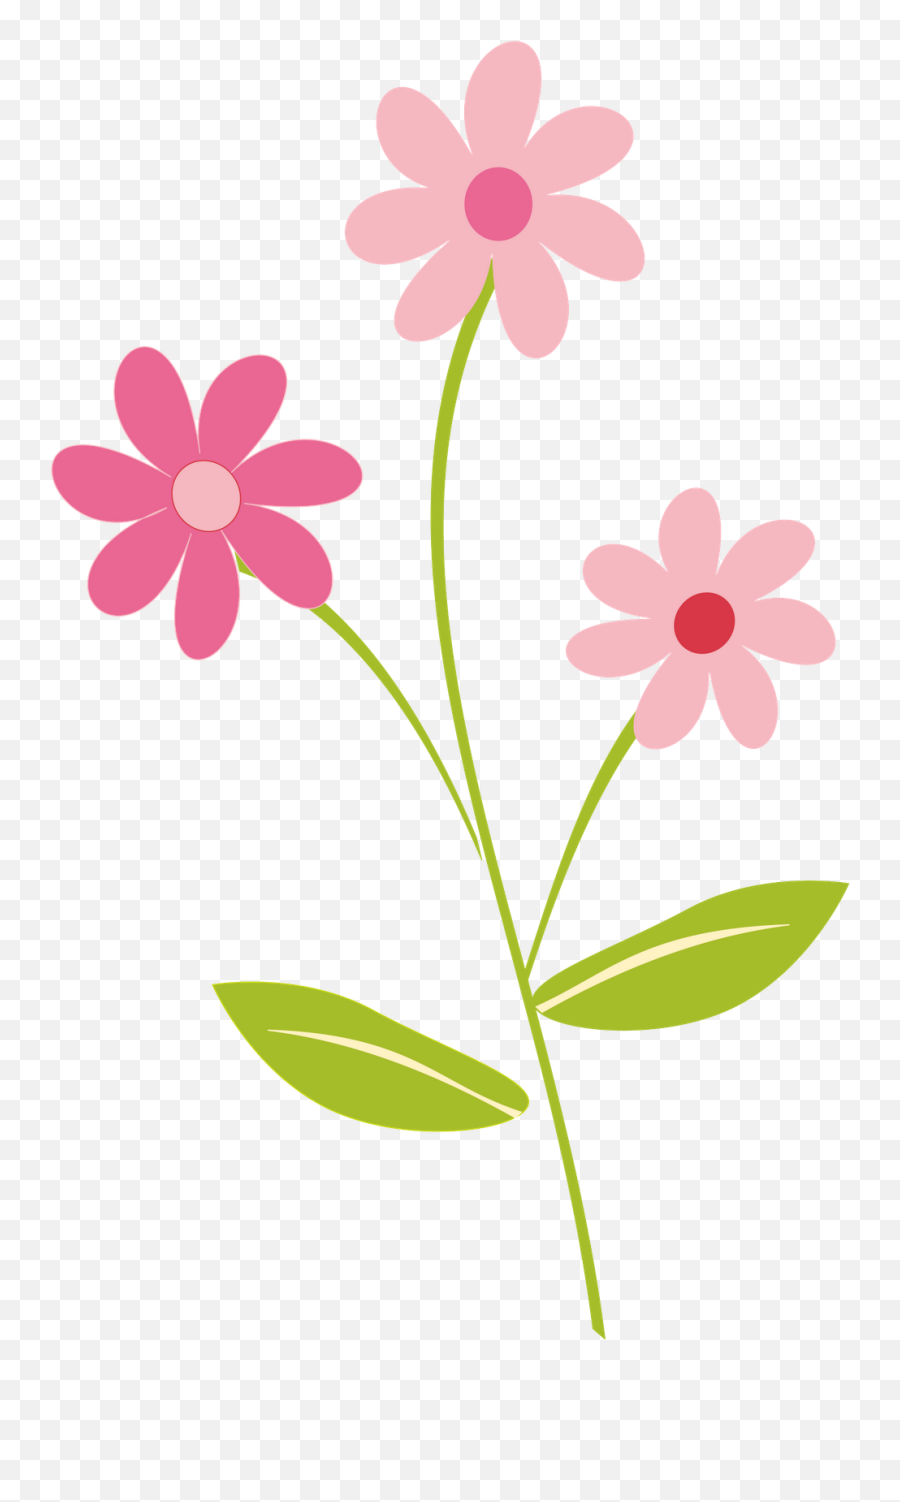 Library Of Spring Flower Jpg Stock Free - Flower Clipart Emoji,Flower Clipart